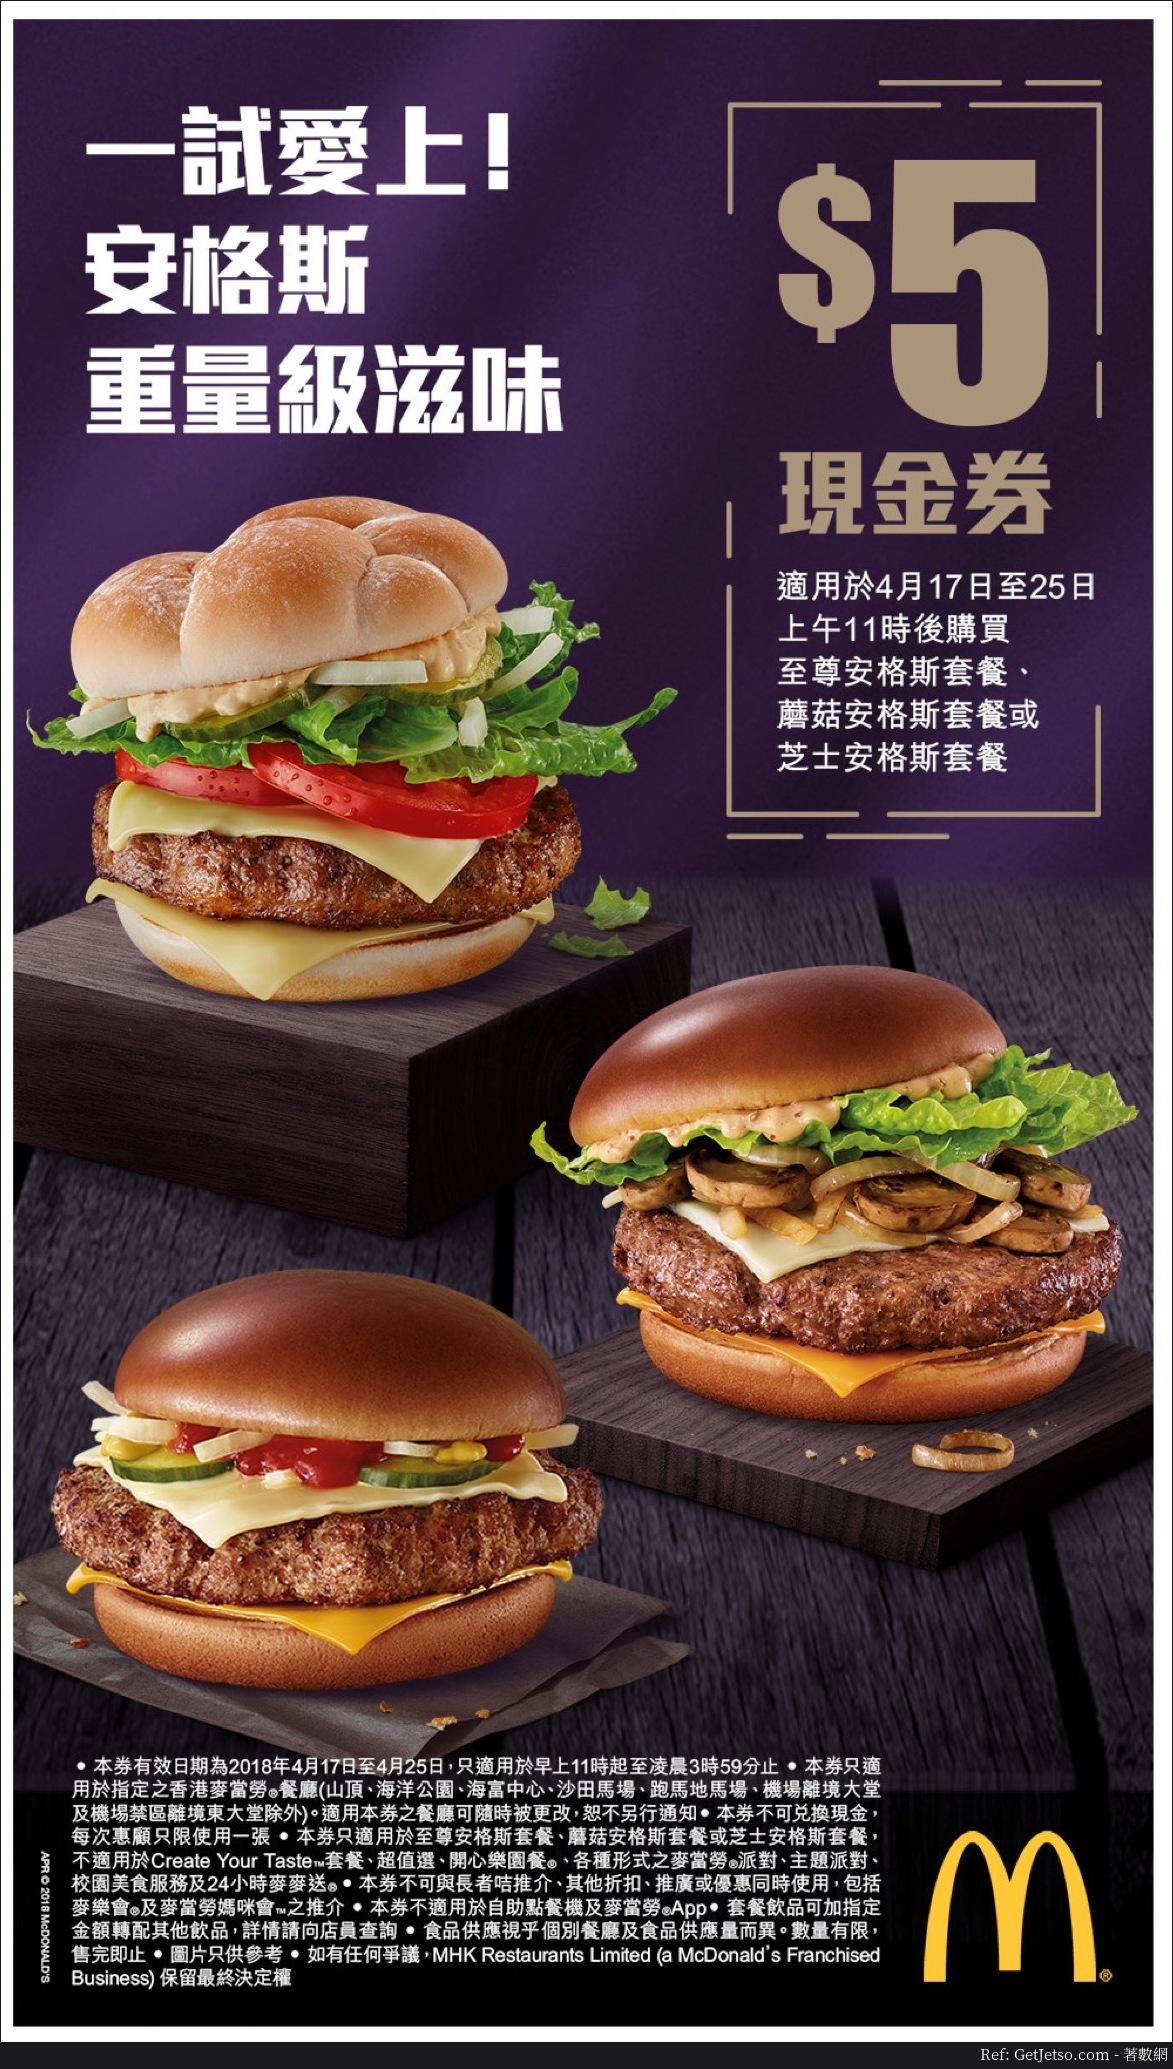 麥當勞「至尊安格斯」漢堡套餐電子優惠券(18年4月17-25日)圖片1